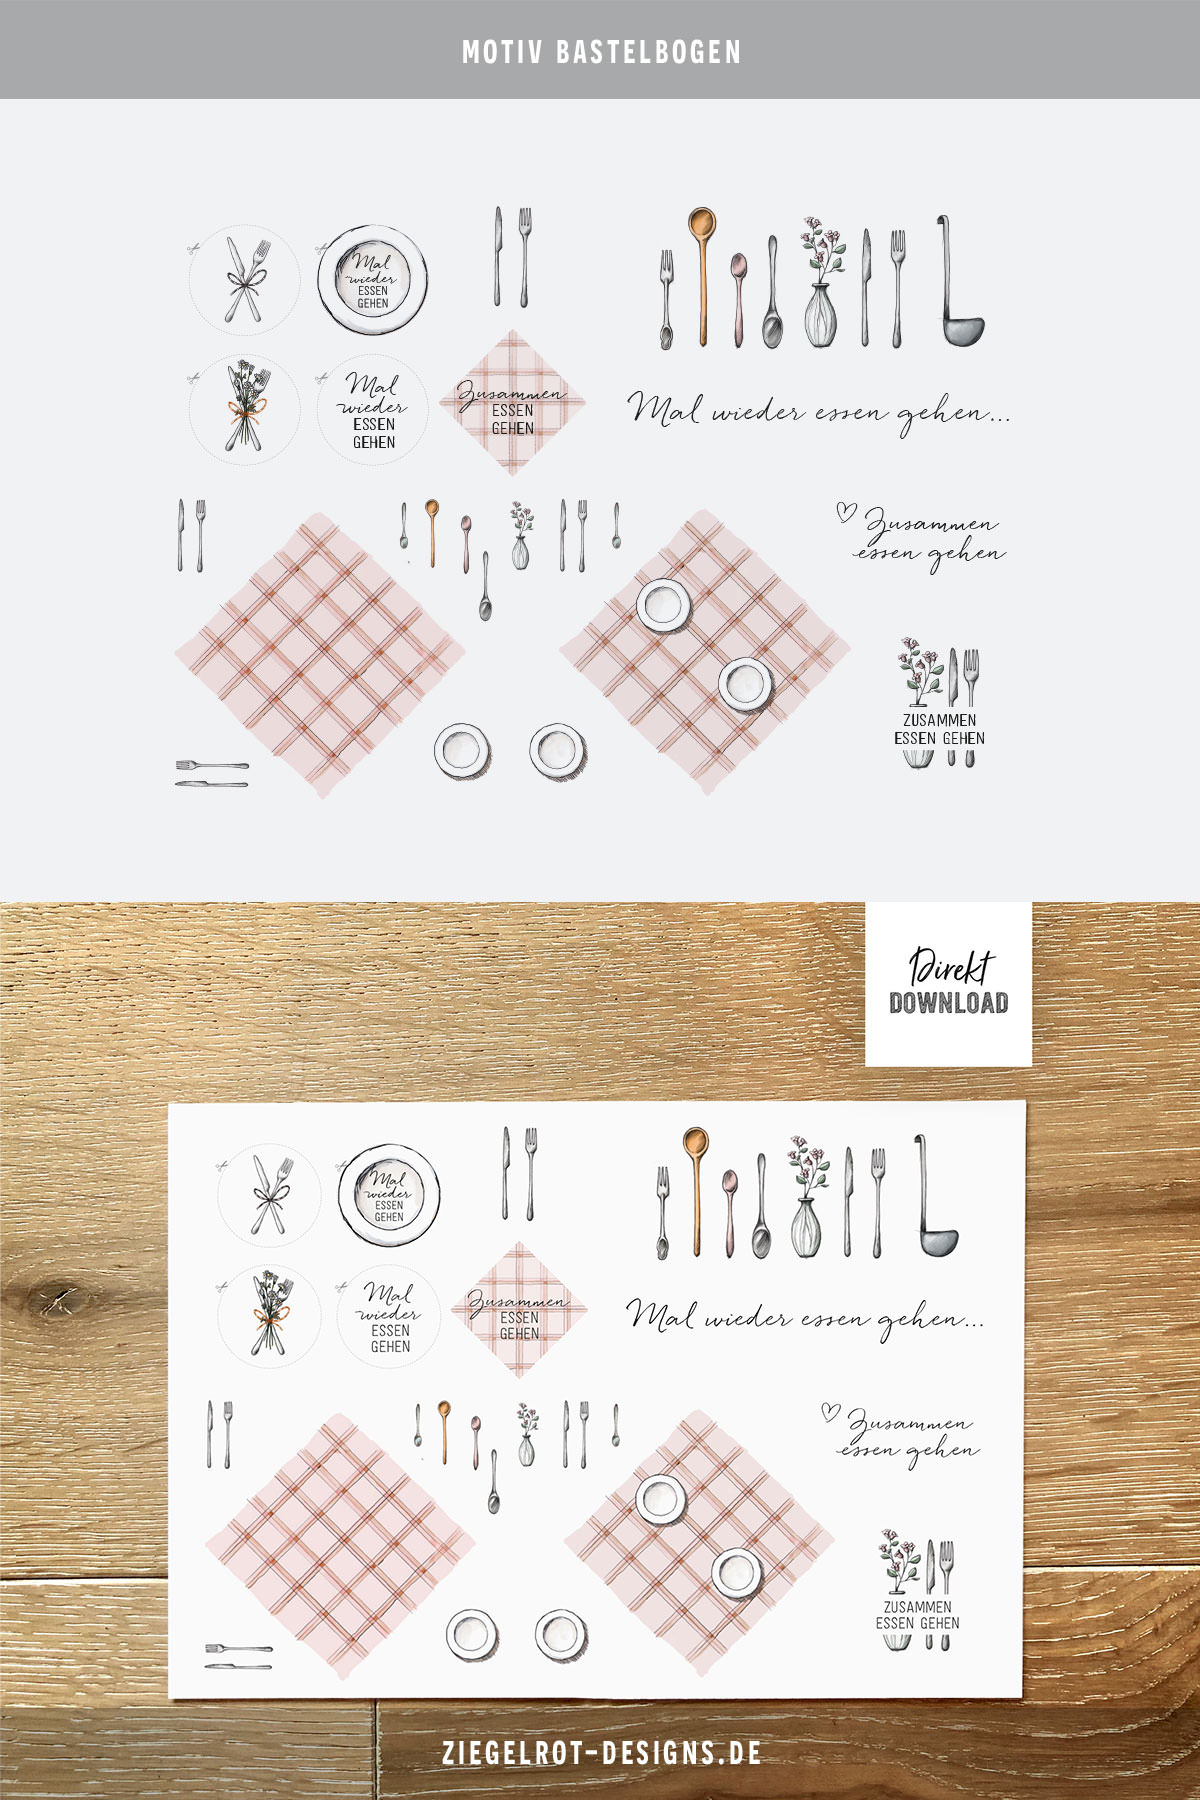 Bastelbogen für Essensgutschein basteln DIN A4 Blatt, Essen gehen Motive und Schriftzug